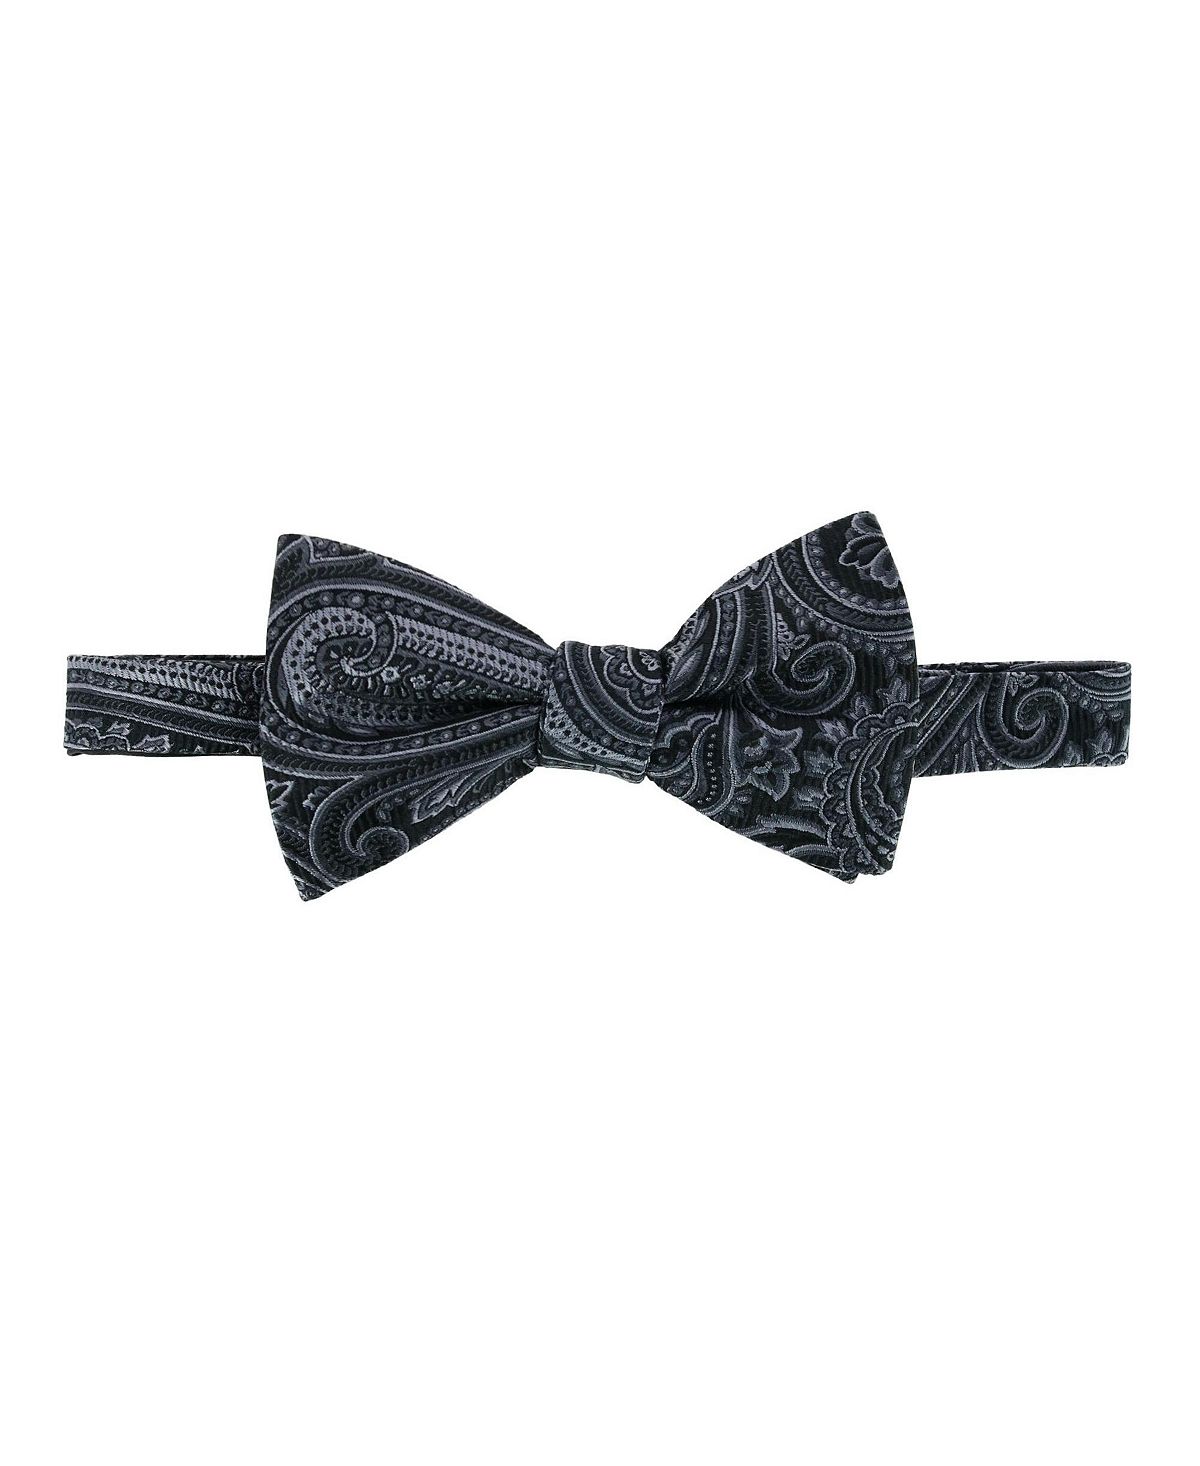 Шелковый галстук-бабочка Sobee с пейсли TRAFALGAR галстук бабочка баклажан пейсли бордовая